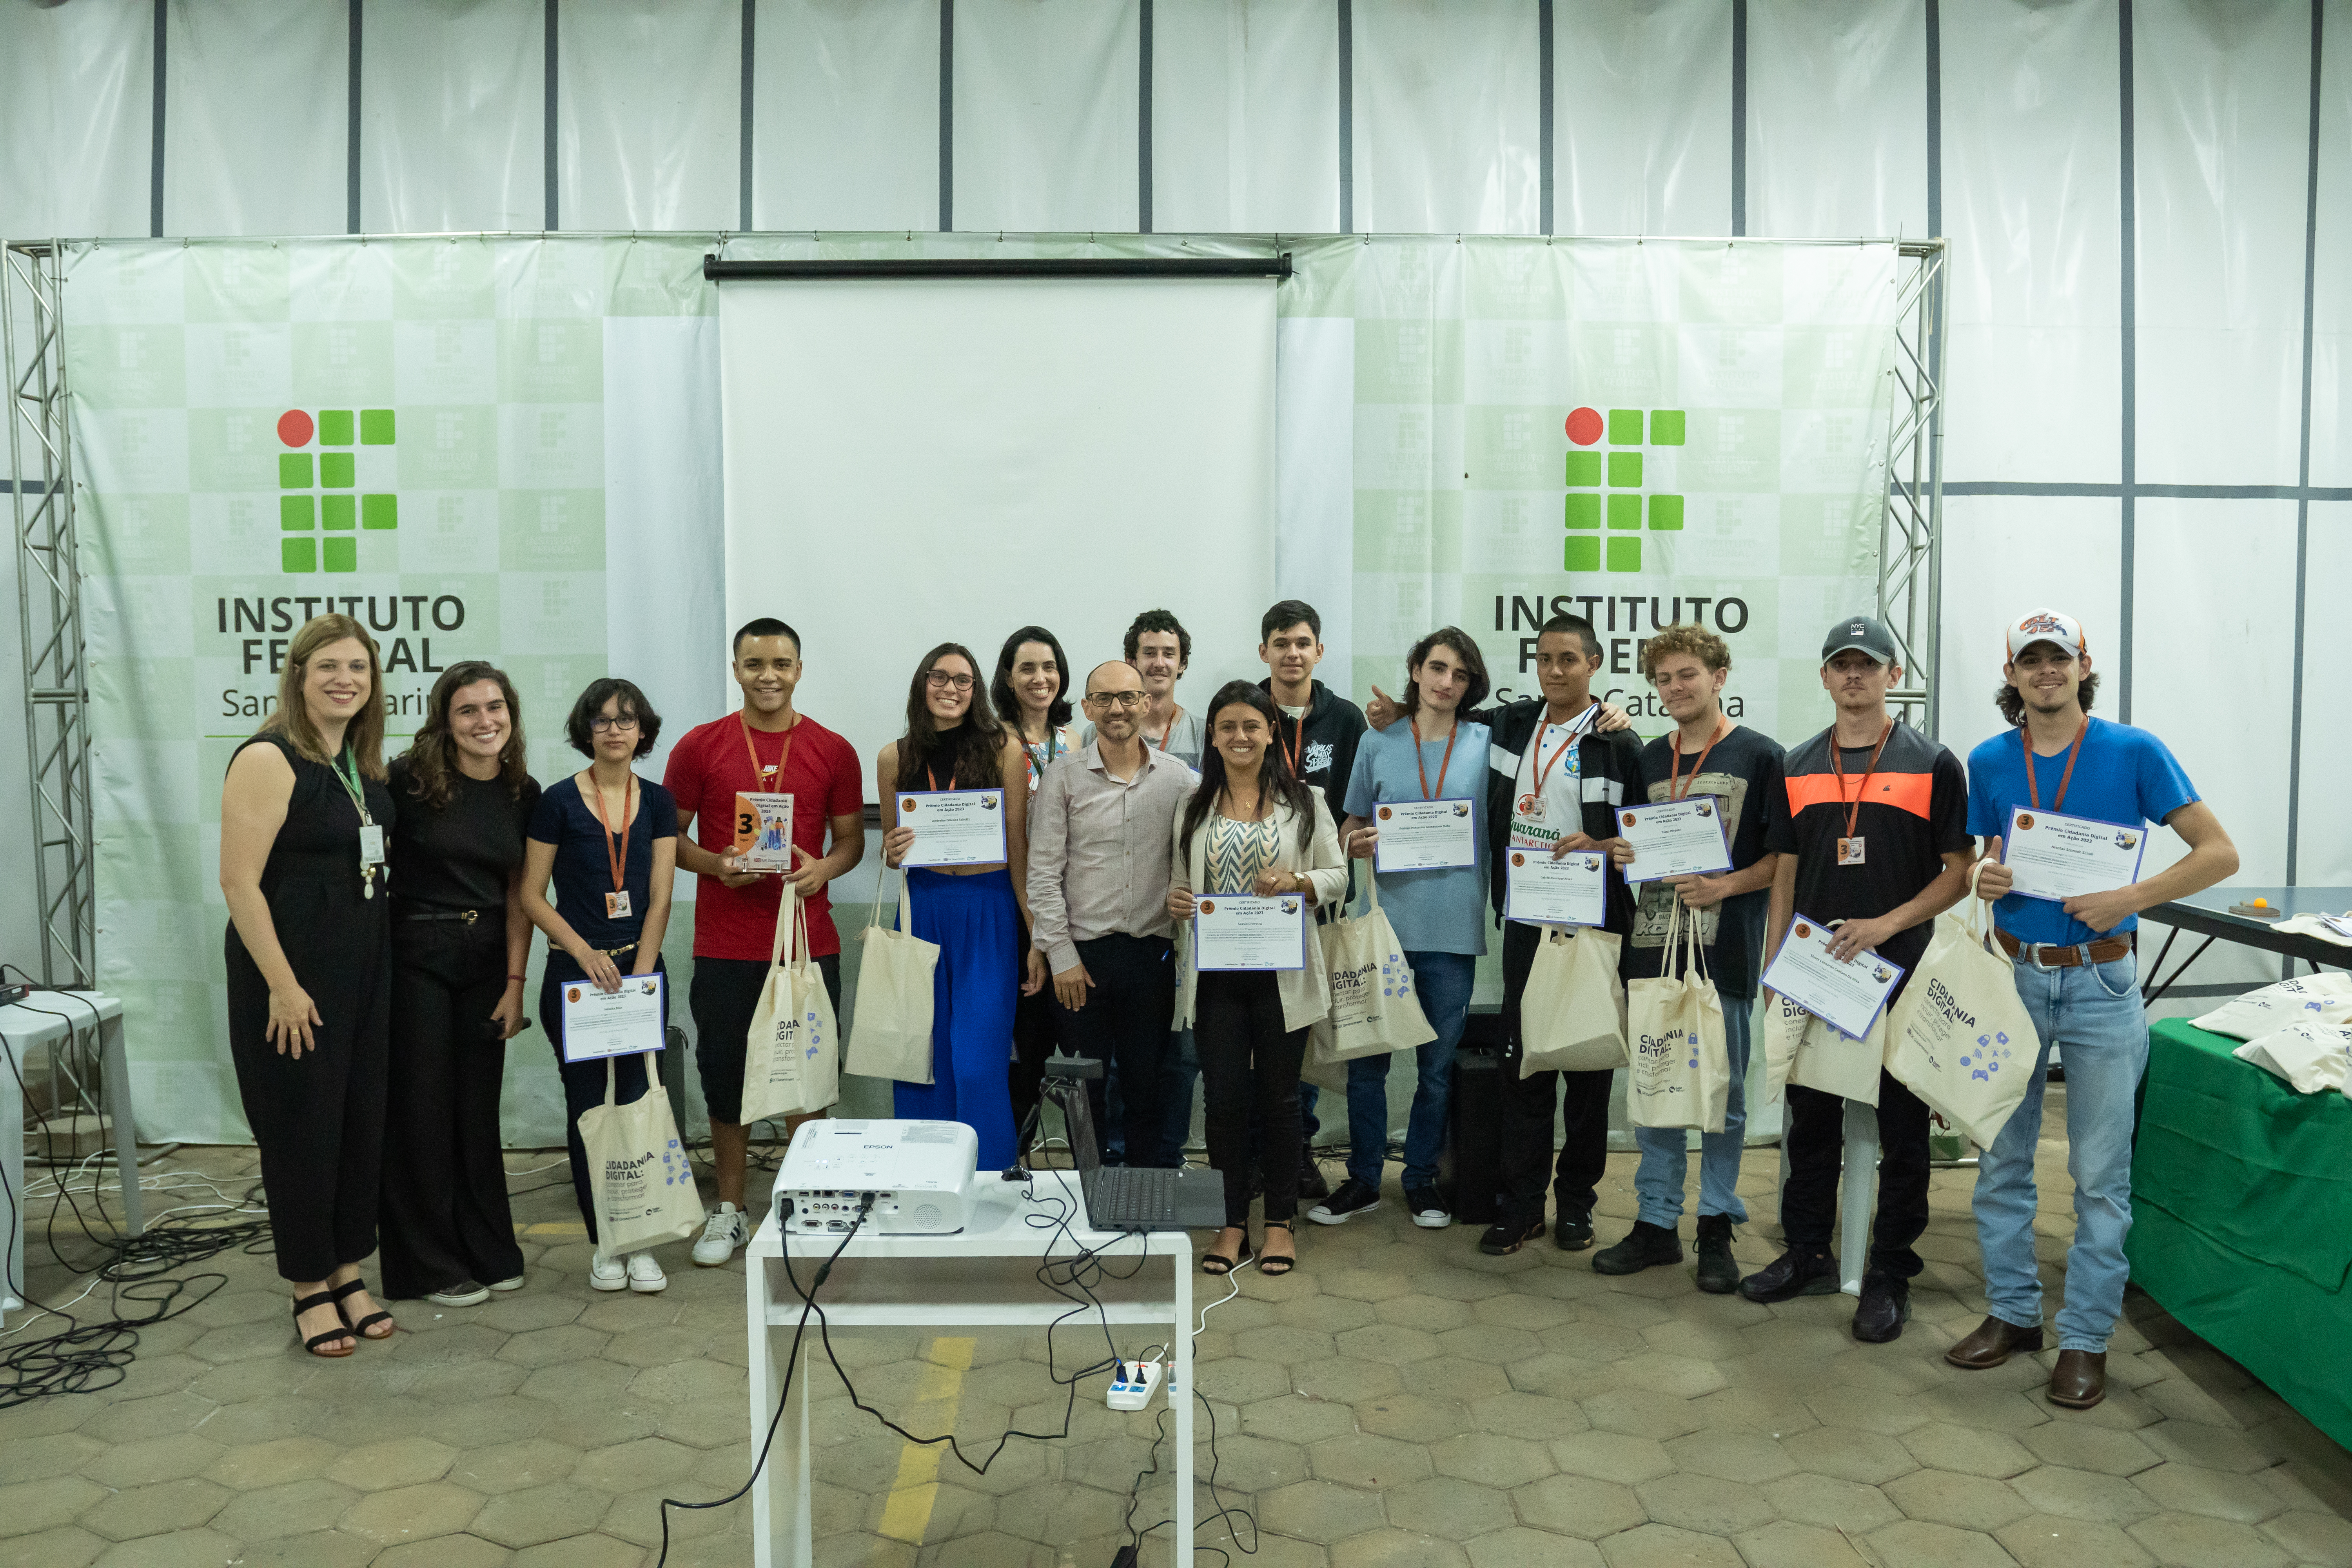 Representantes da entidade promotora do concurso entregaram premiação aos estudantes no fim de fevereiro